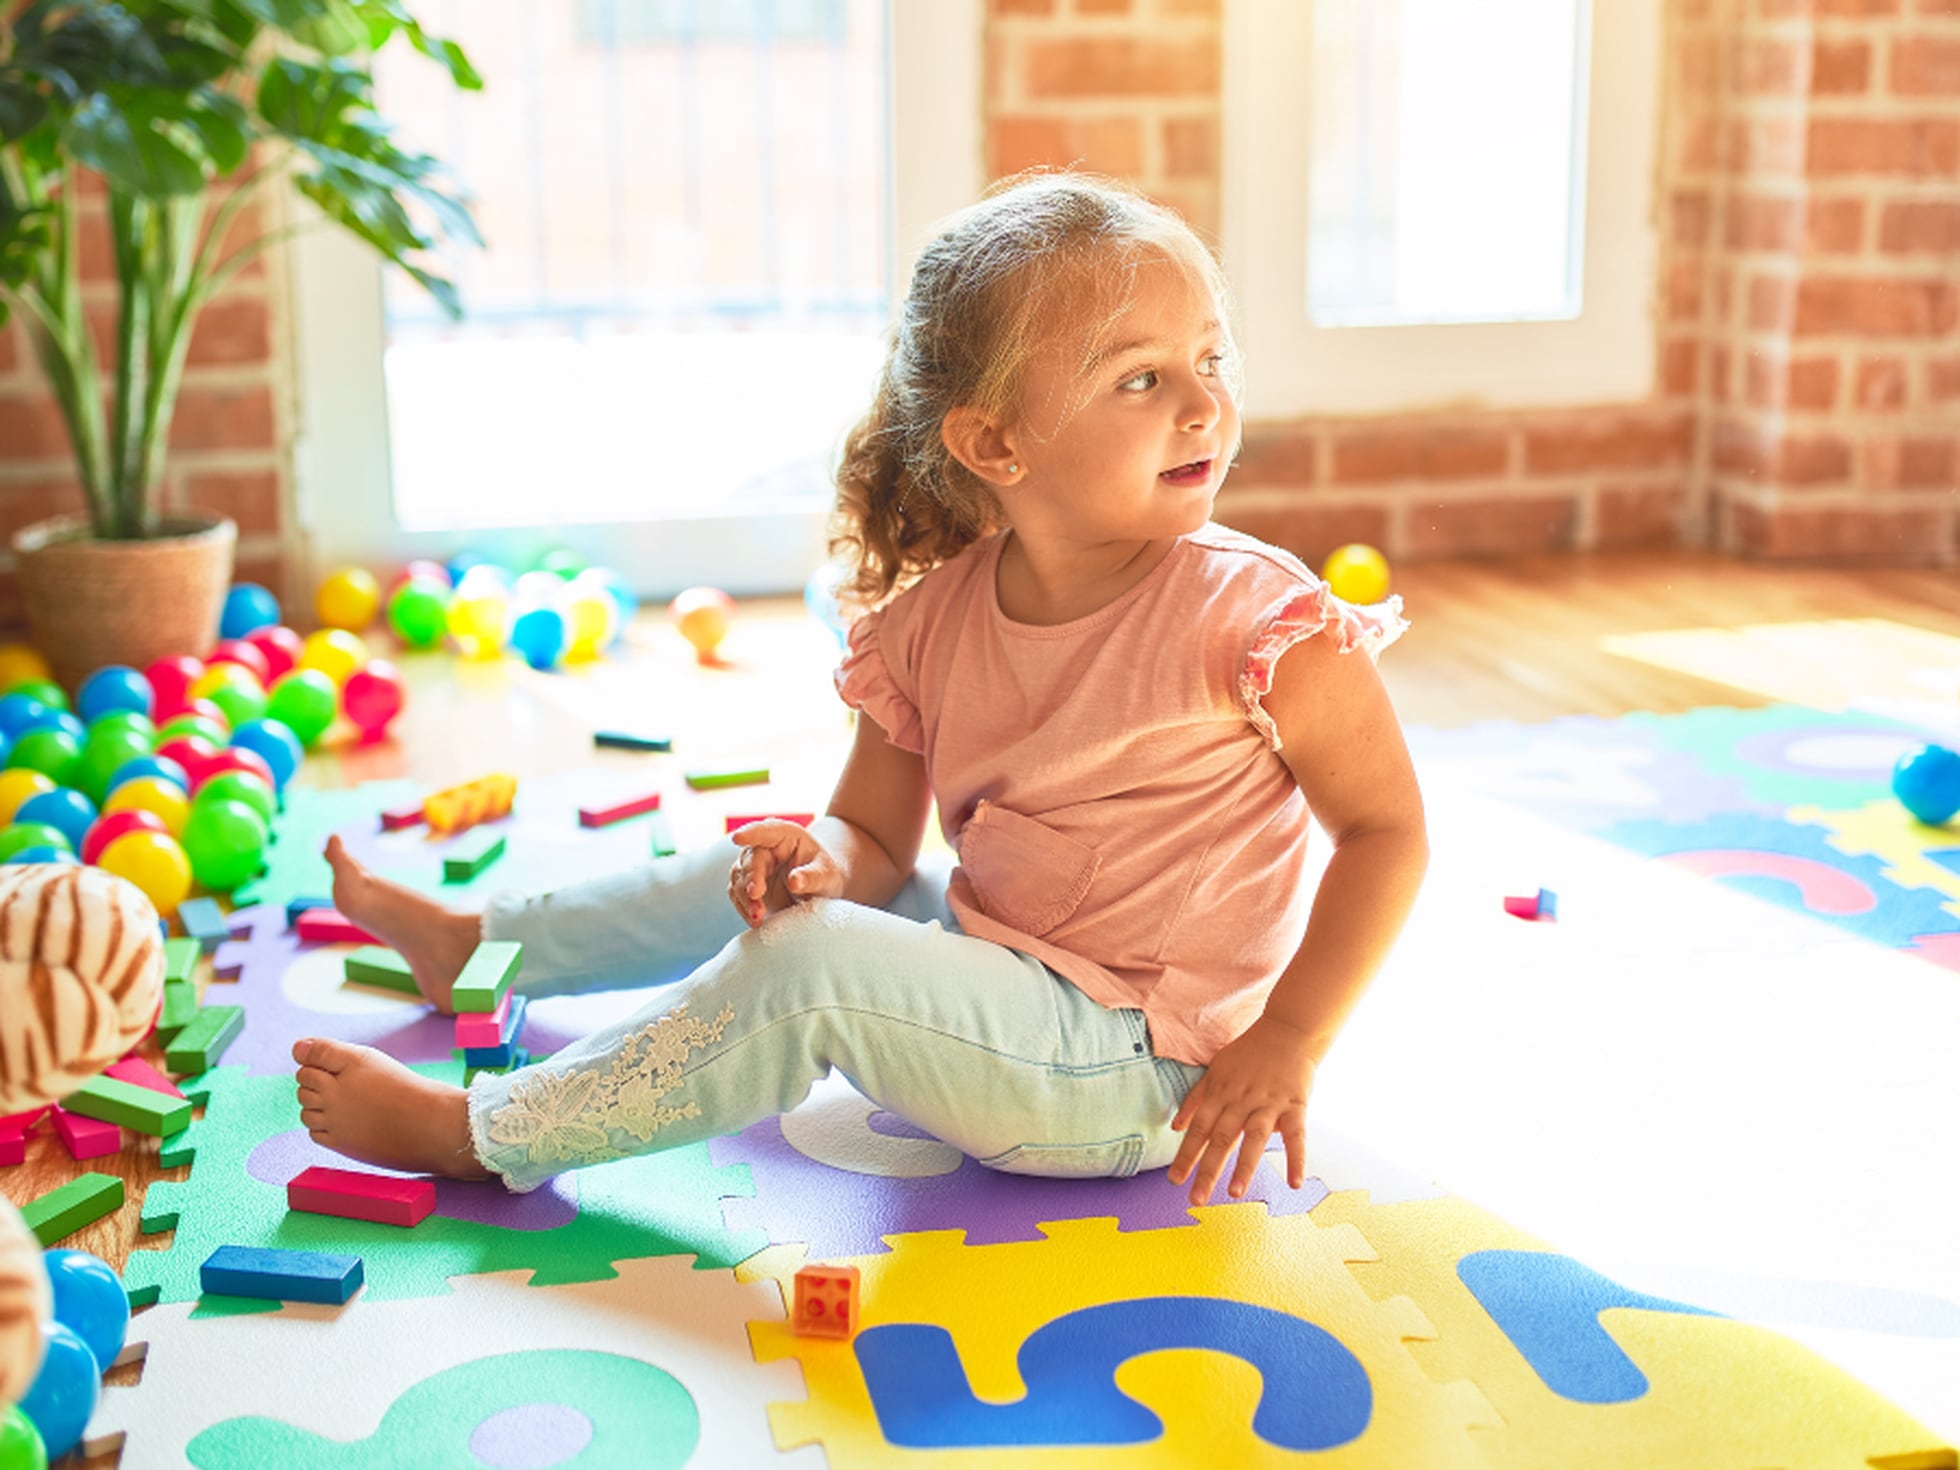 Tapete de gateo para el suelo del bebé, tapete de juego de doble cara,  reversible, impermeable, para bebés y niños pequeños